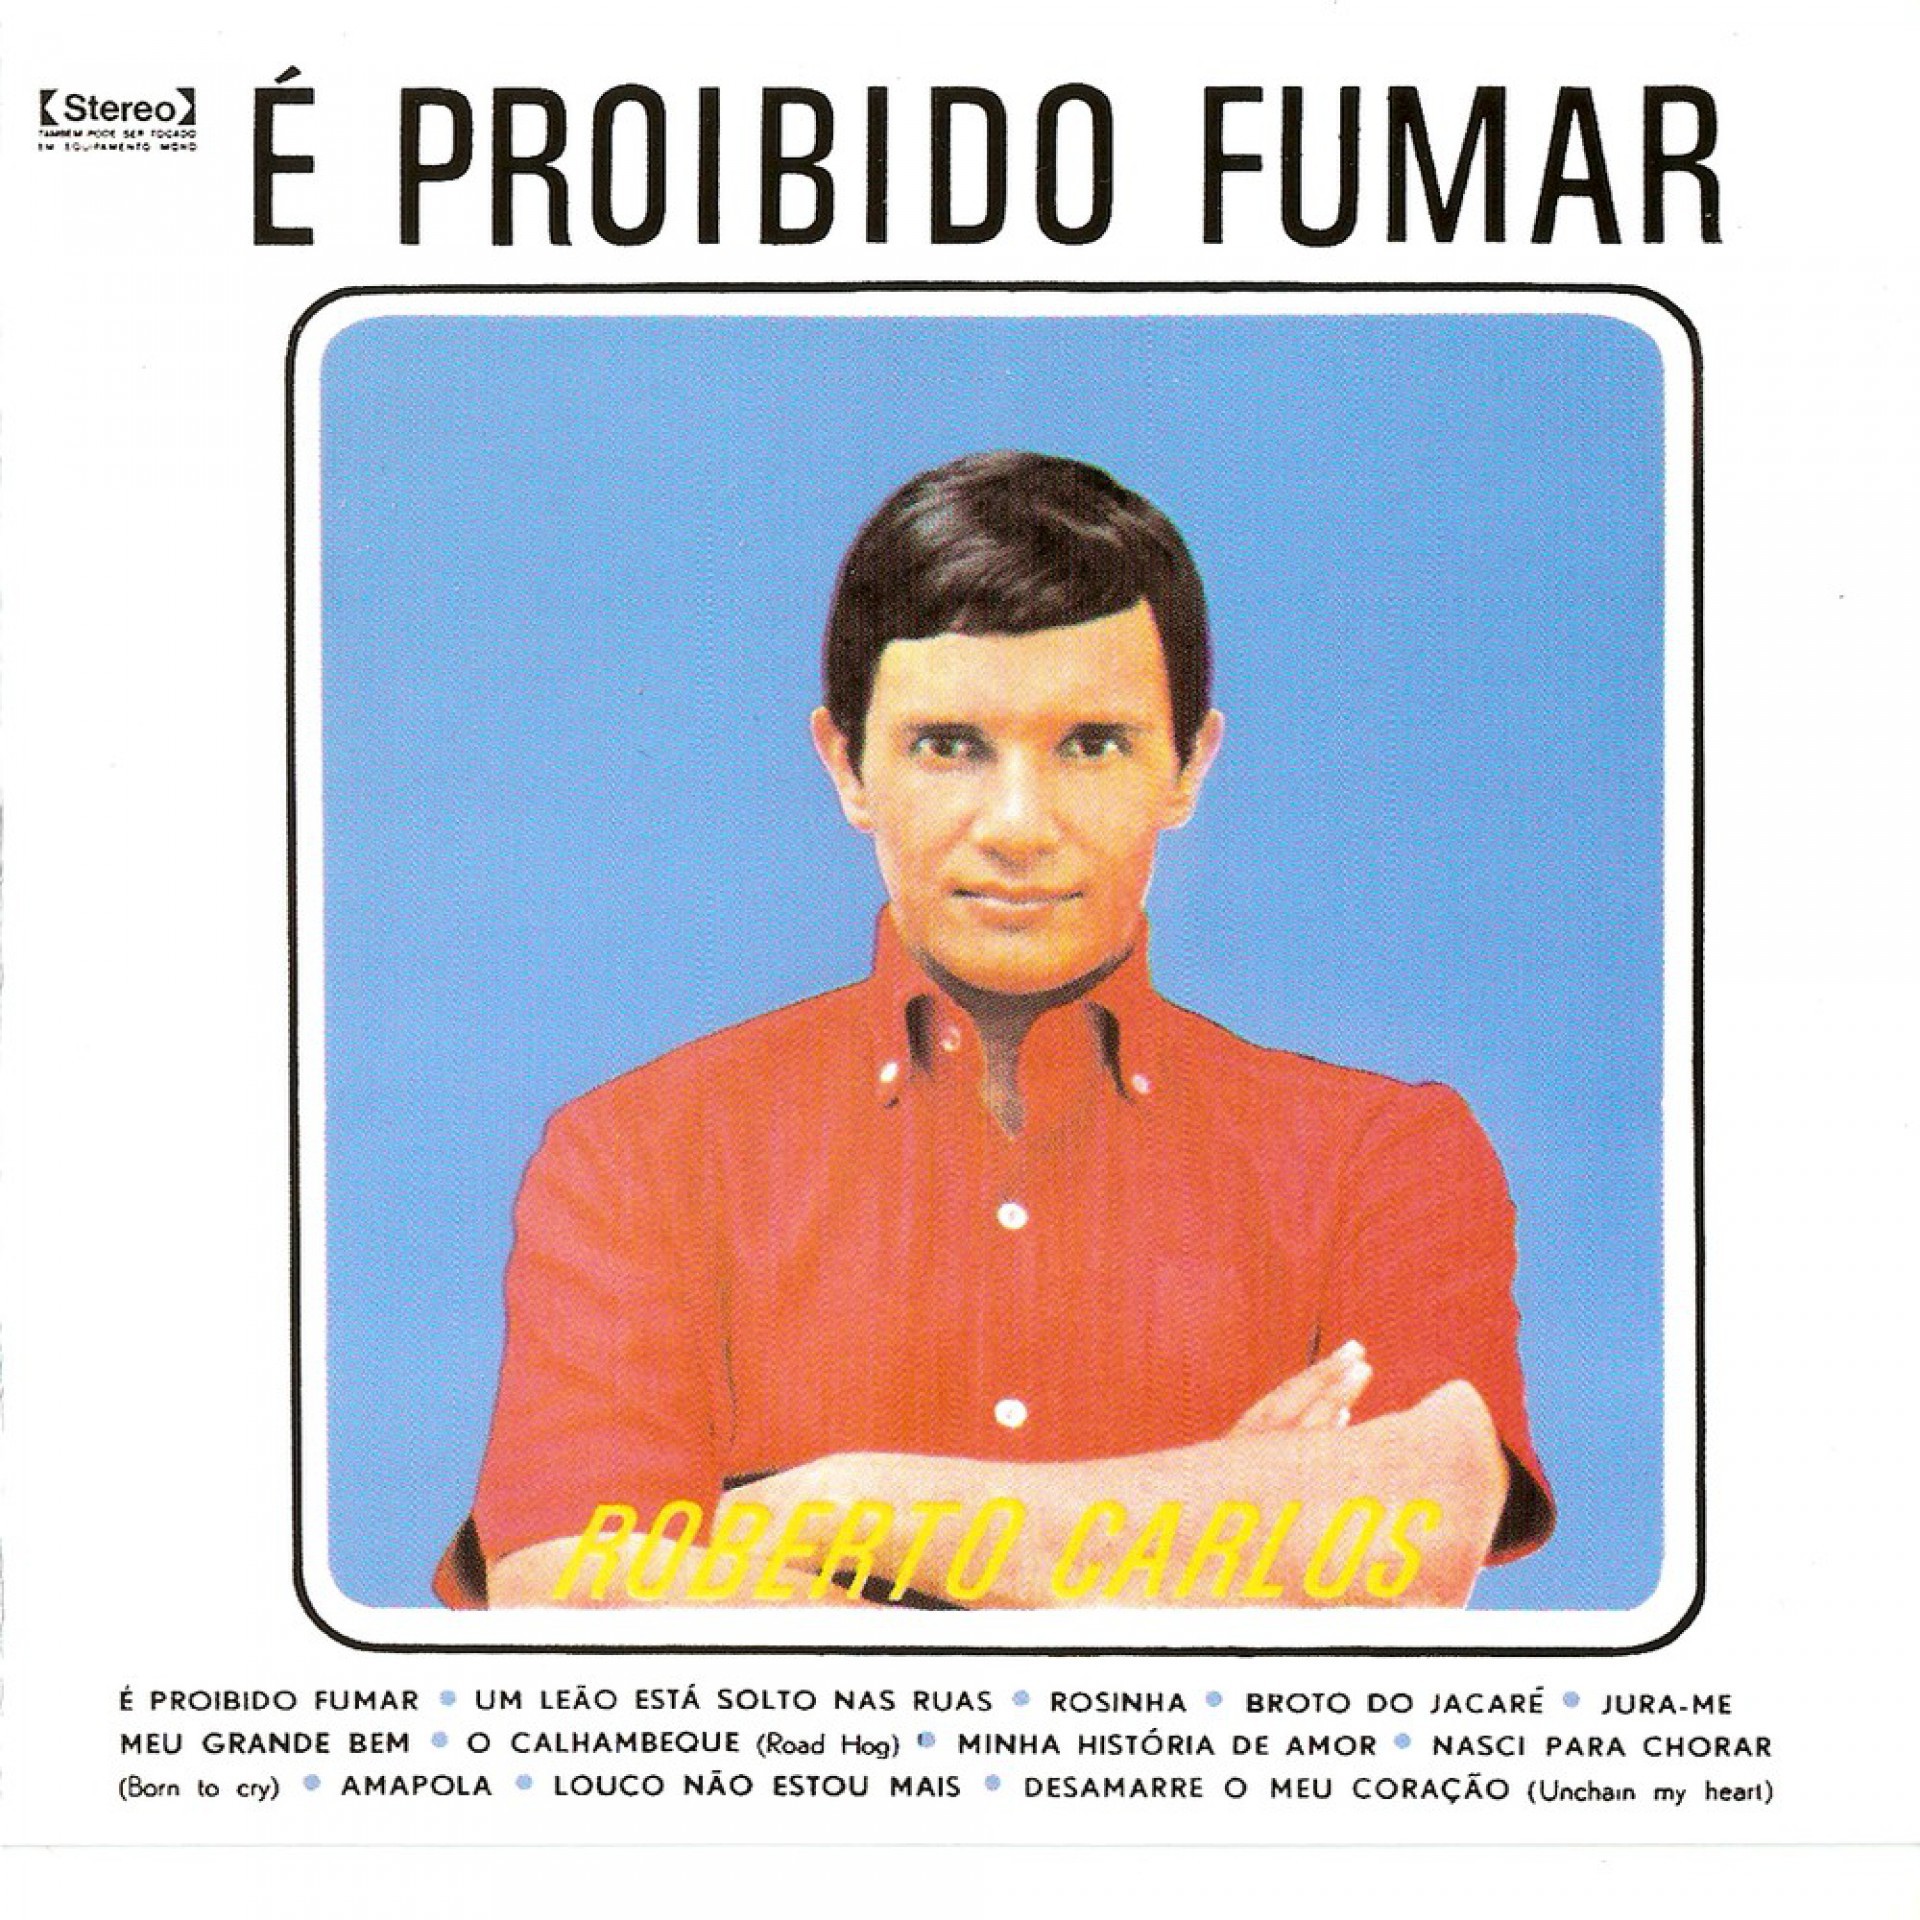 É Proibido Fumar album de Roberto Carlos(Foto: Arquivo Pessoal/Roberto Carlos)